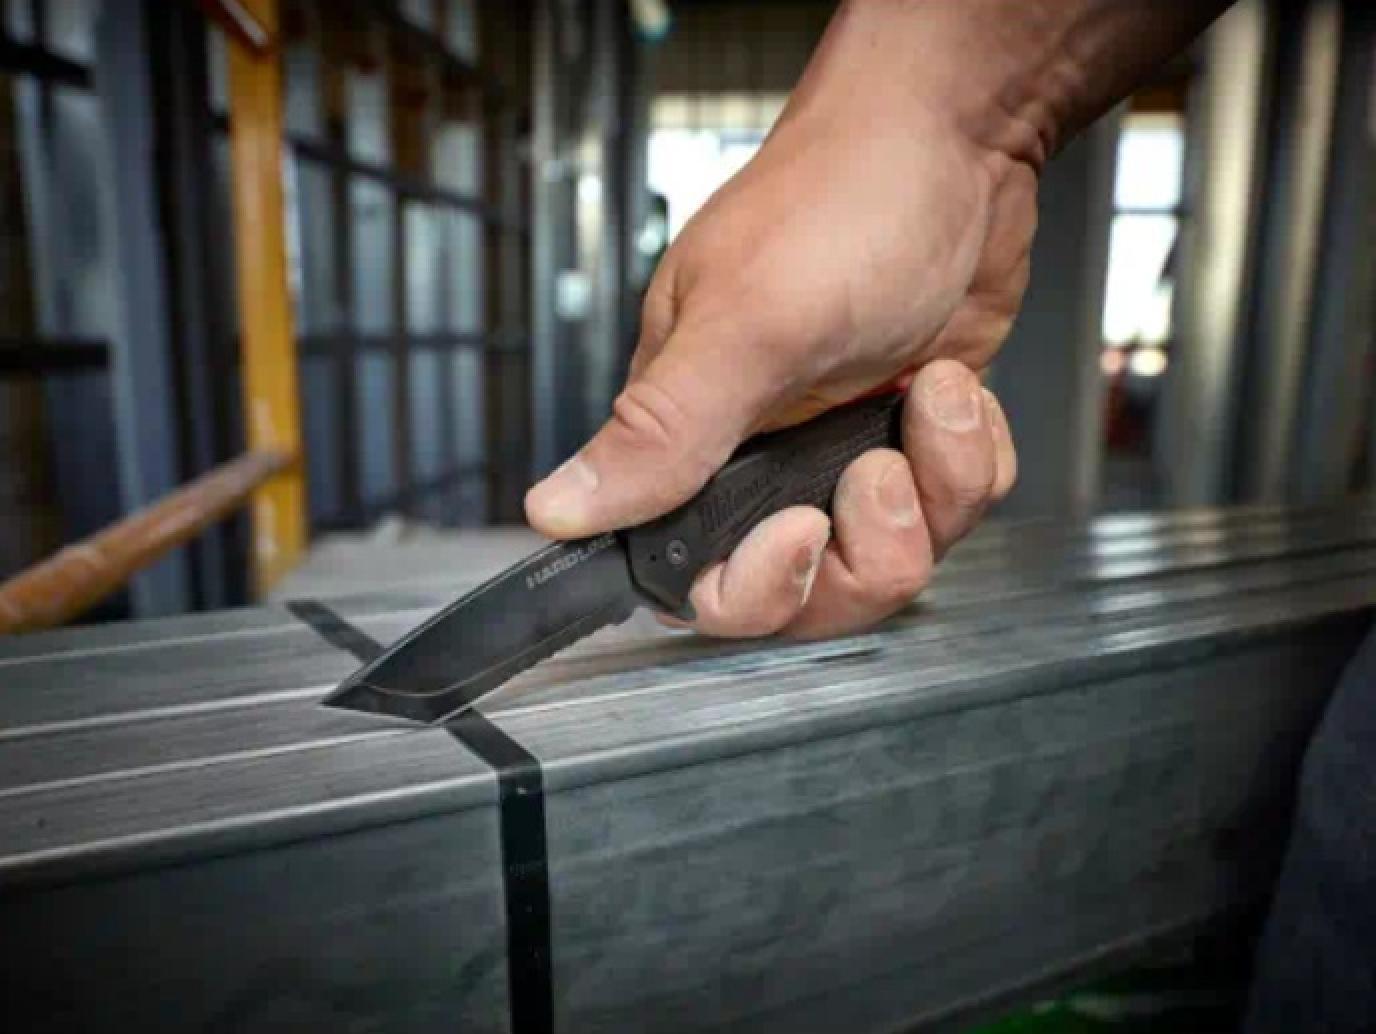 Milwaukee 3” HARDLINE Serrated Blade Pocket Knife